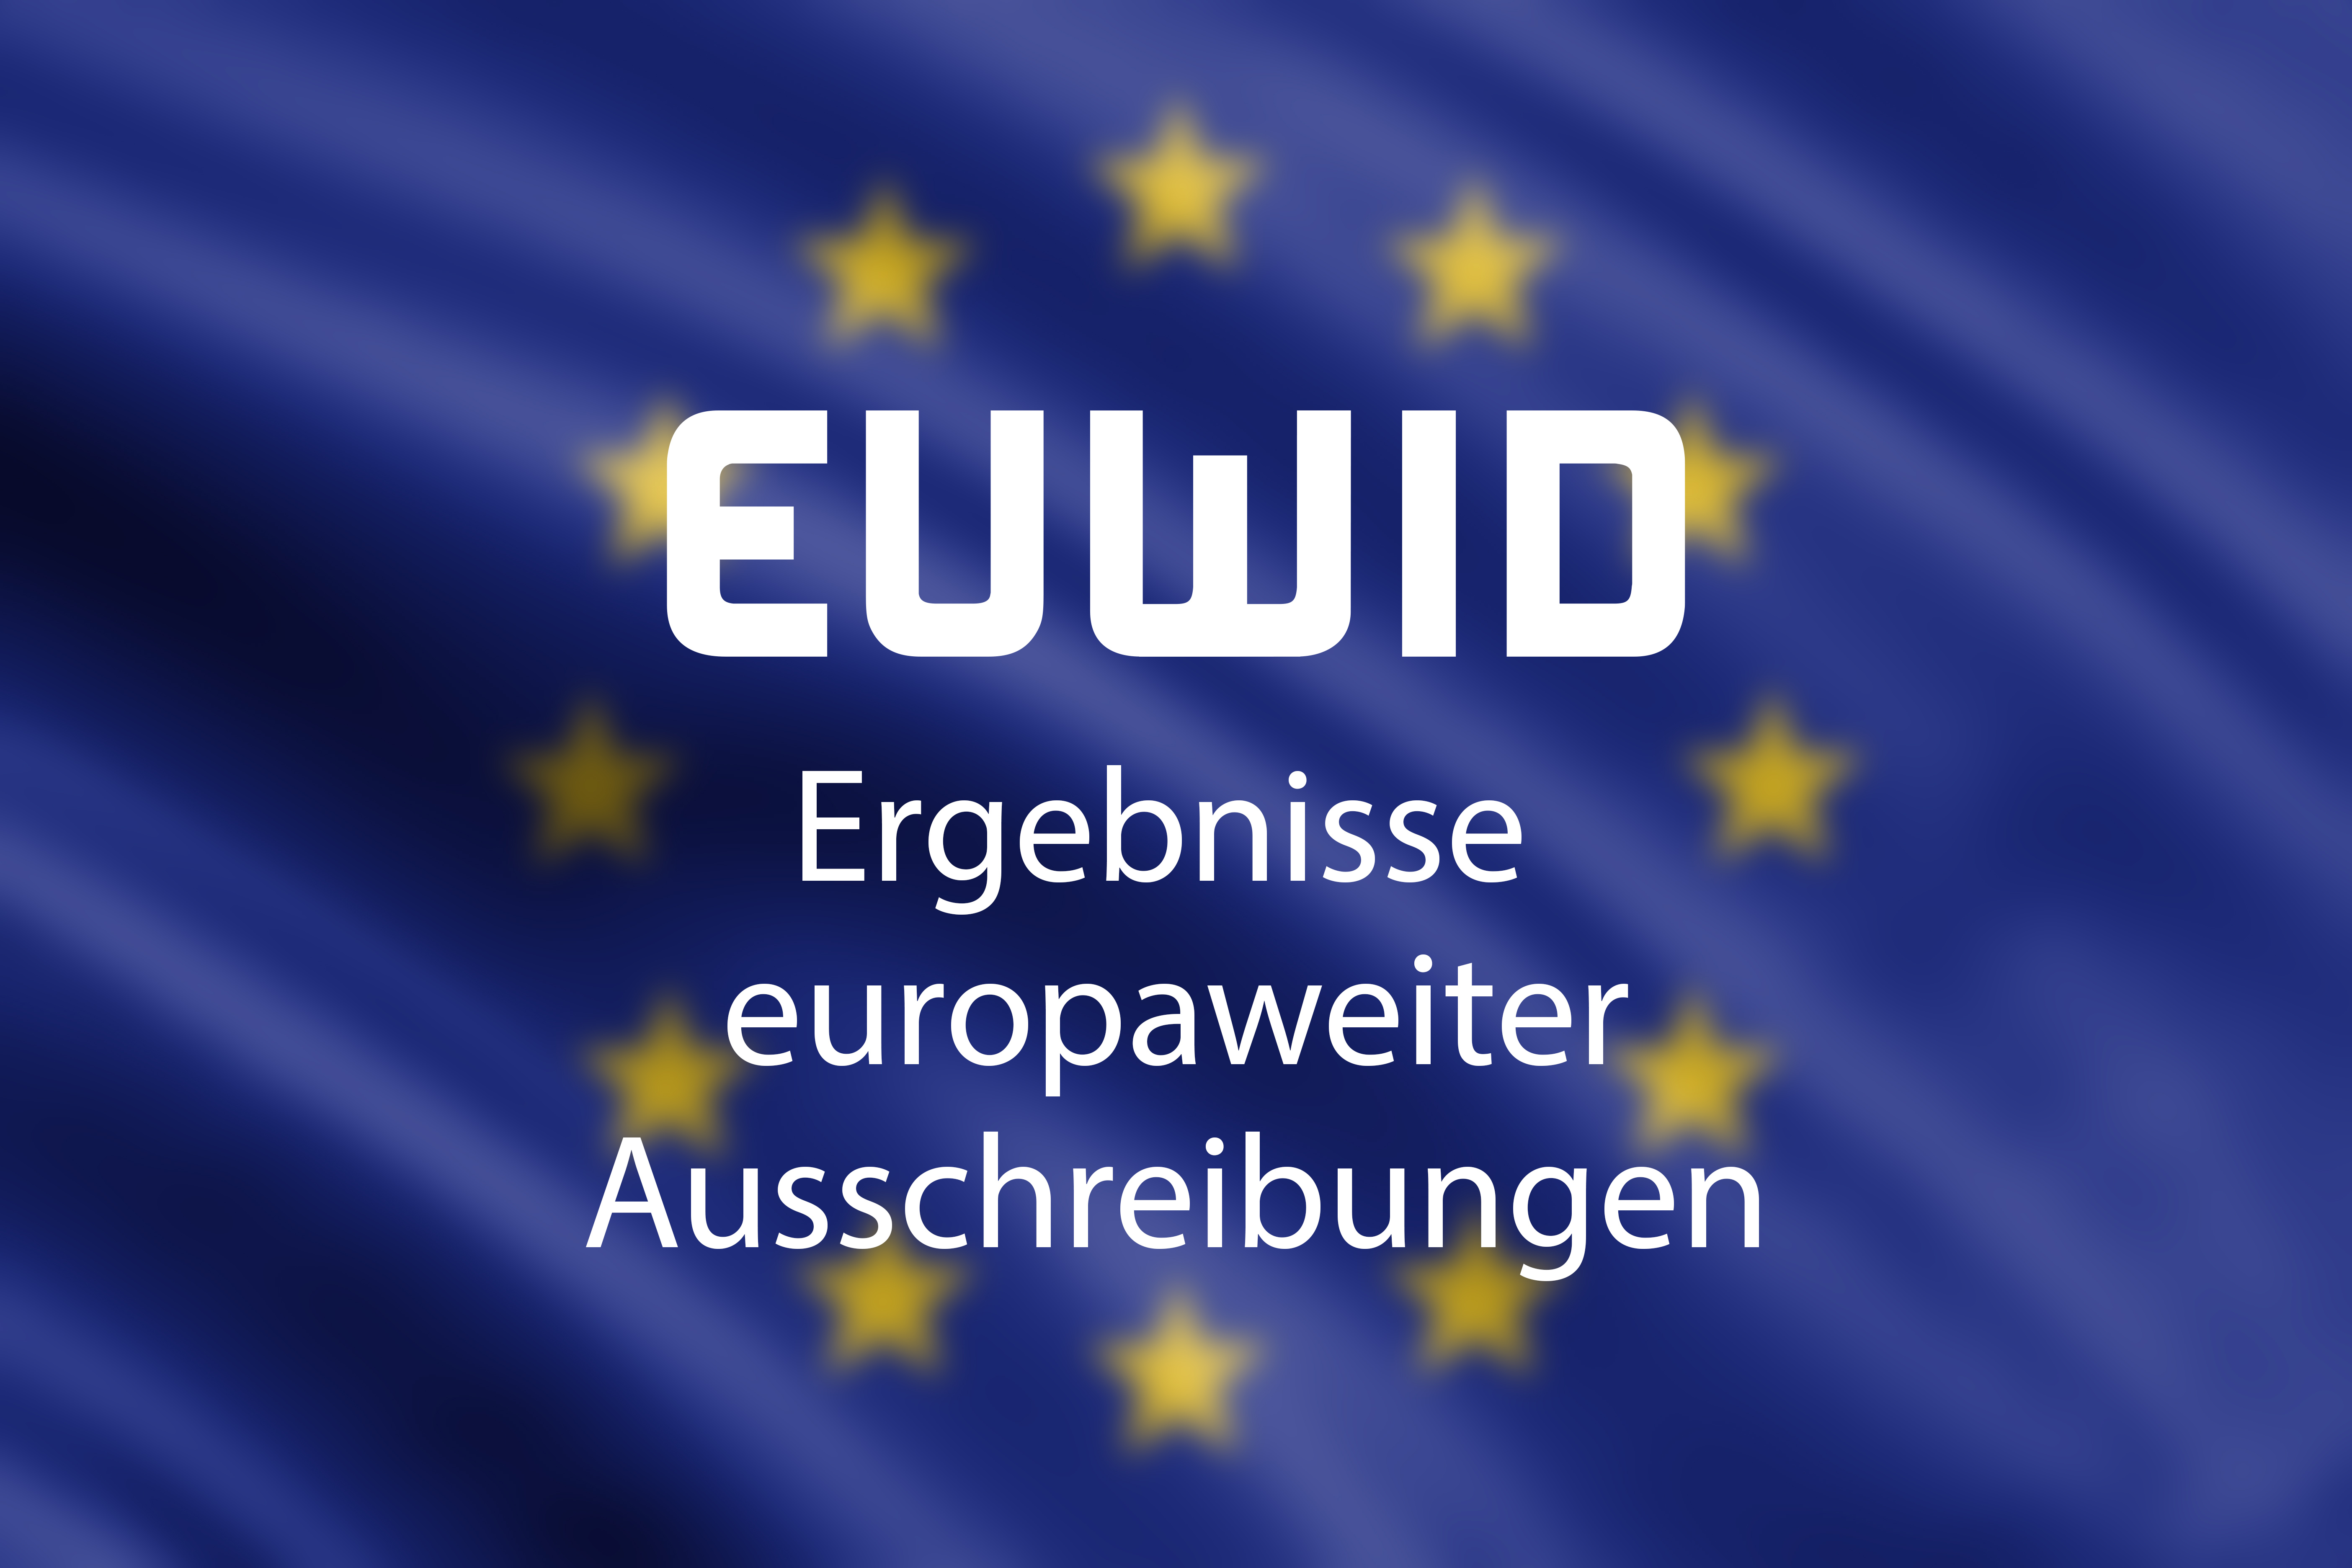 Bild der Flagge der Europäischen Union, welche mit dem Schriftzug "EUWID Ergebnisse europaweiter Ausschreibungen" versehen wurde.